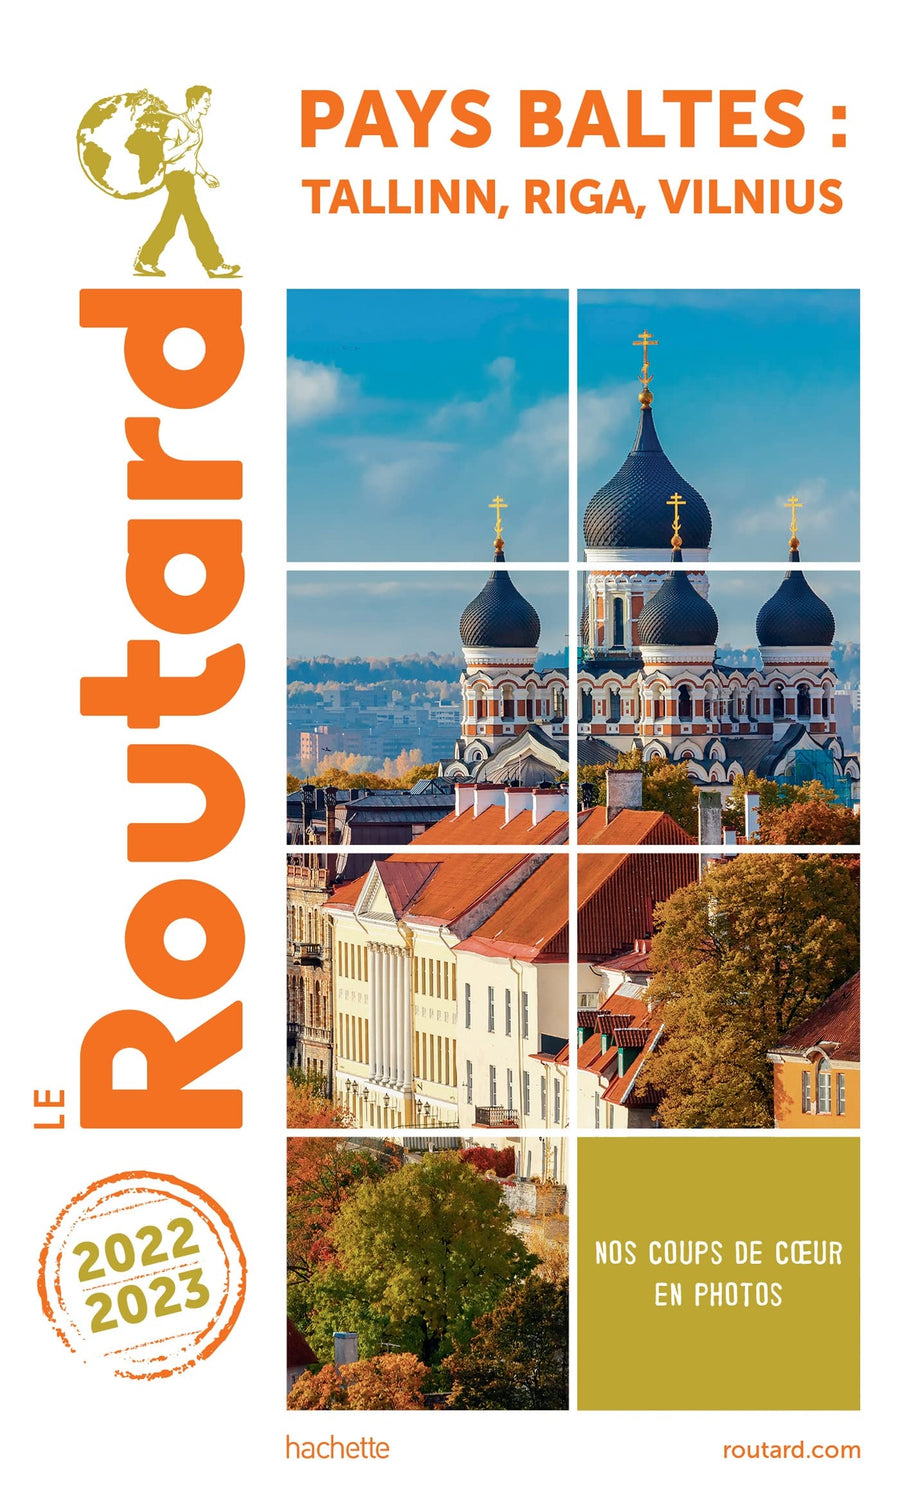 Guide du Routard - Pays Baltes & Tallinn, Riga, Vilnius 2022/23 | Hachette guide de voyage Hachette 